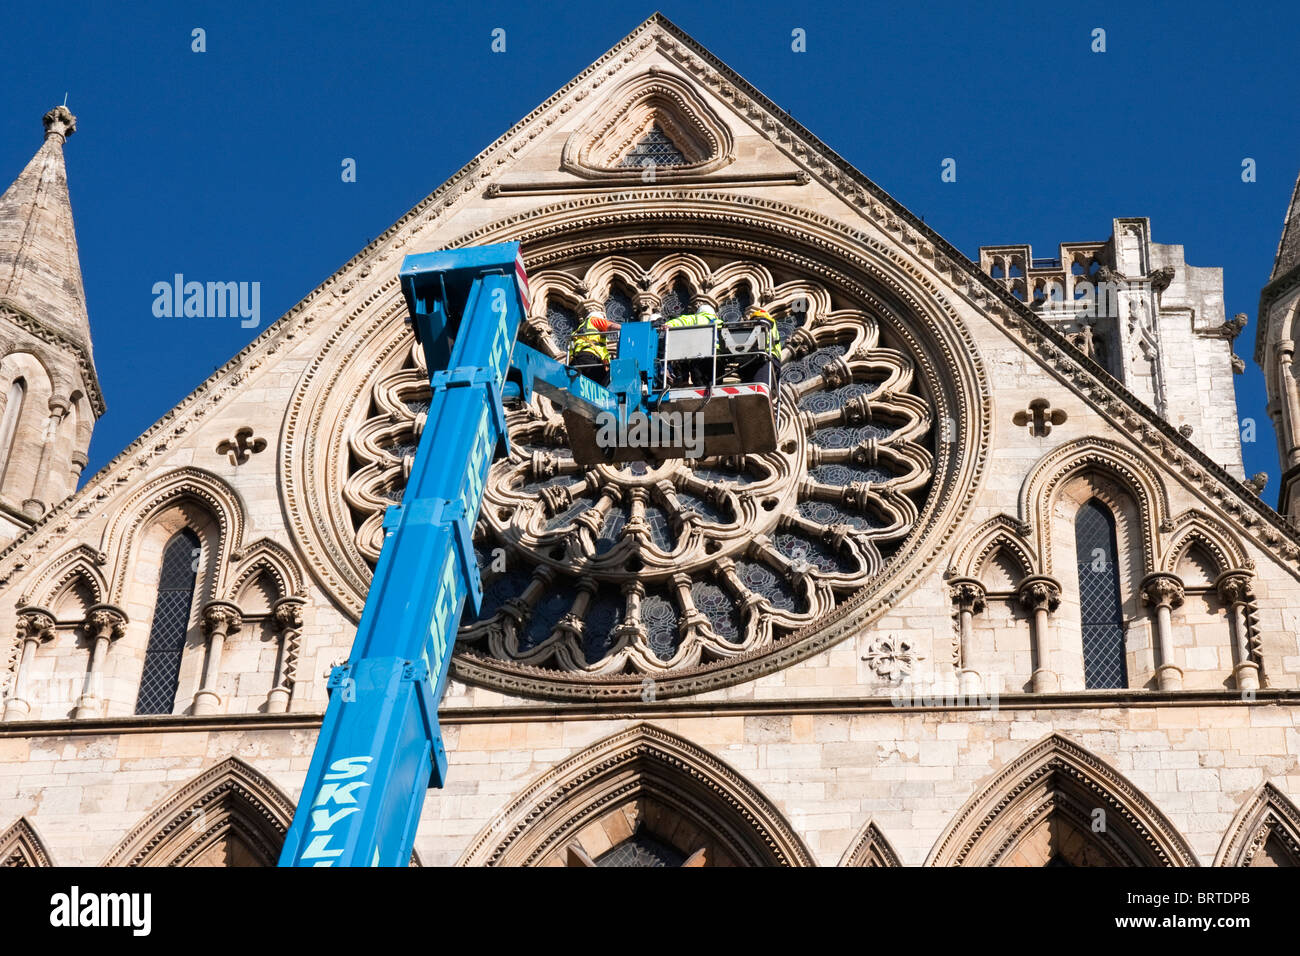 Il lavoro le persone utilizzando un skylift al sondaggio le parti alte della "York Minster' Foto Stock